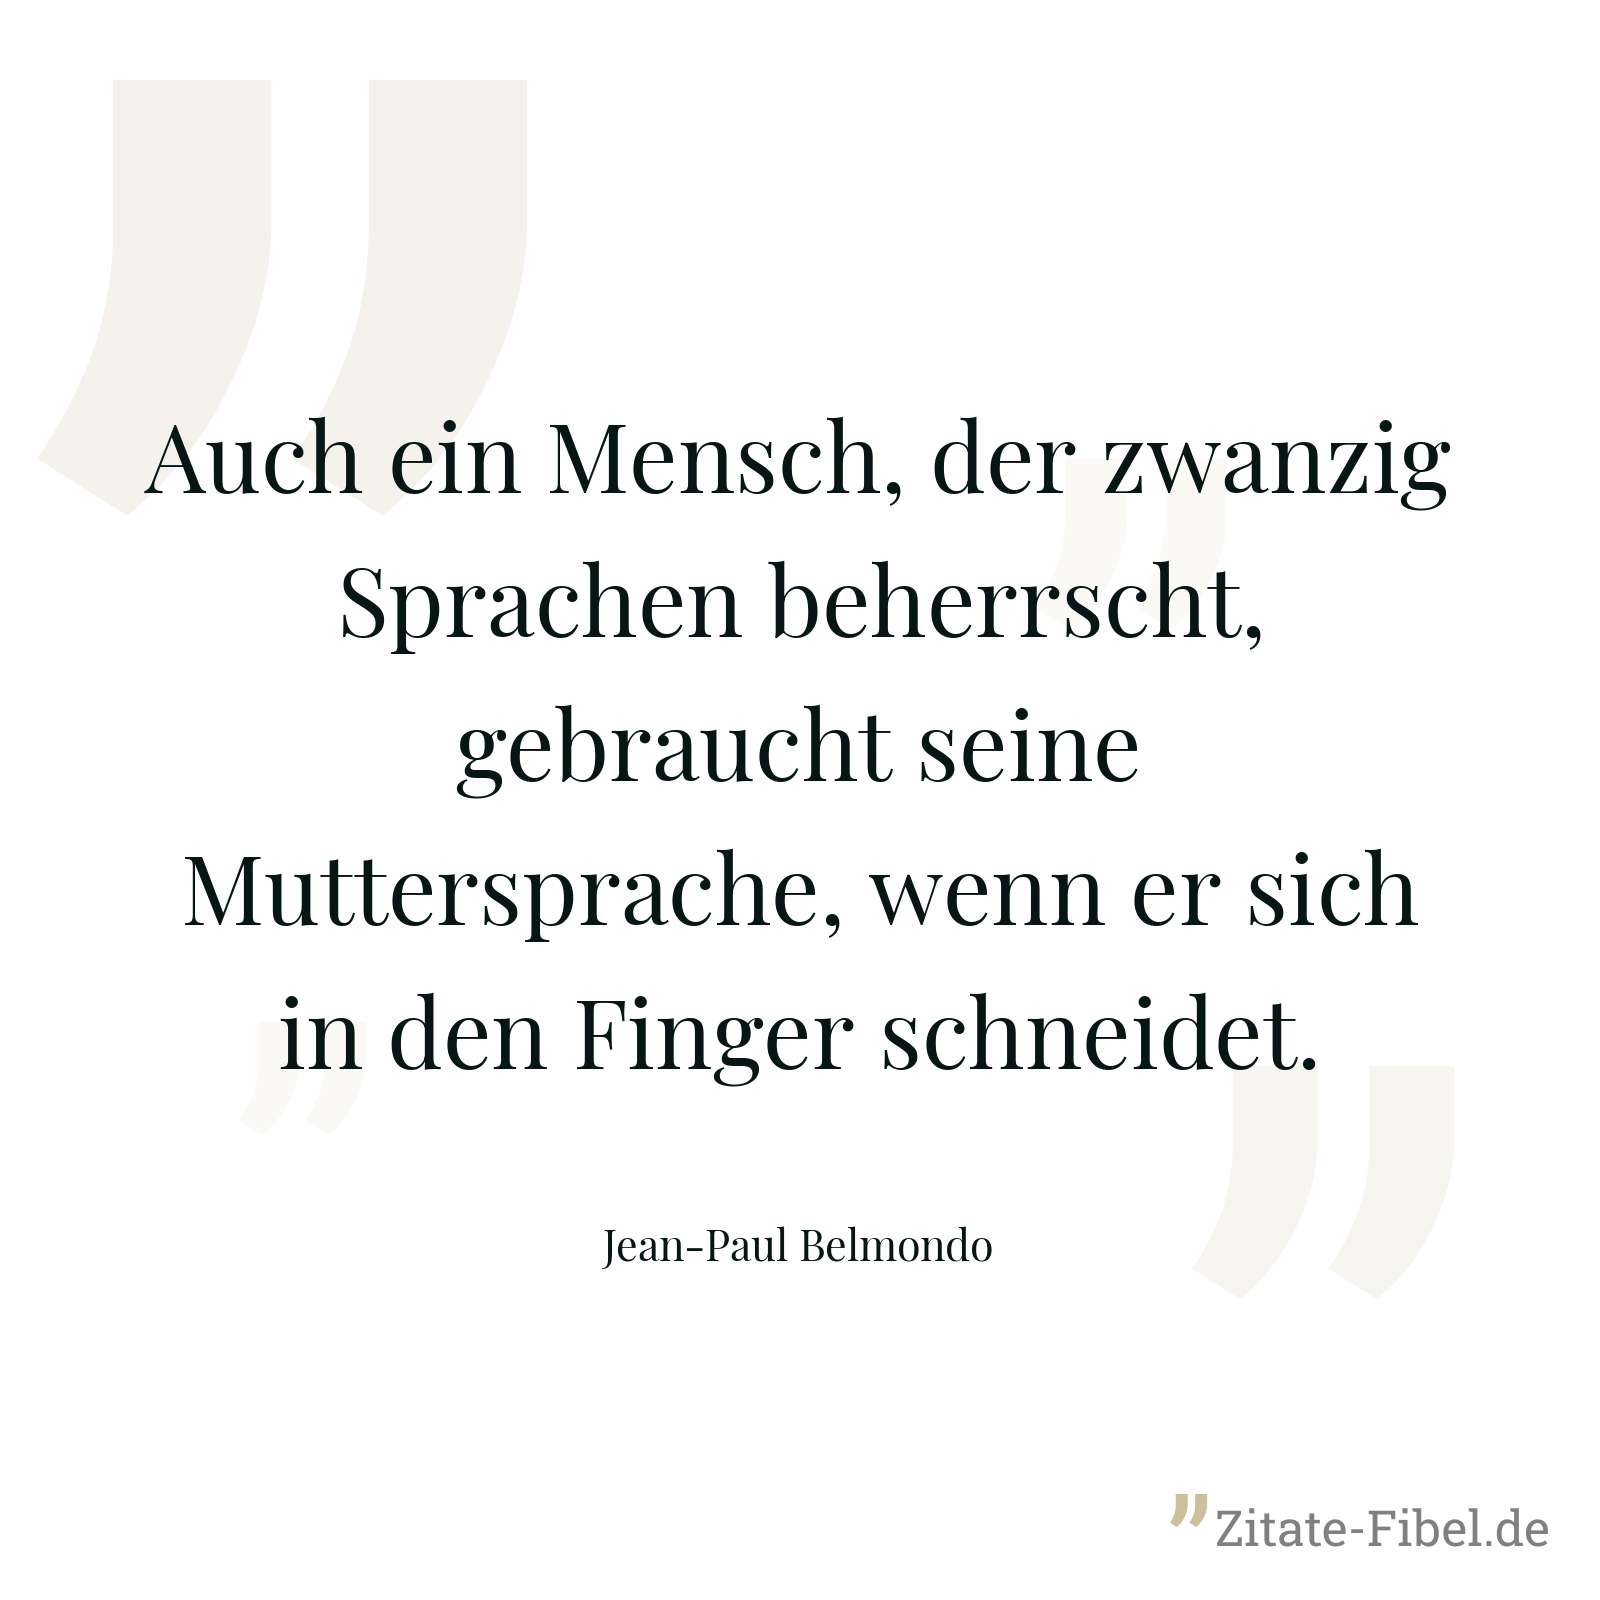 Auch ein Mensch, der zwanzig Sprachen beherrscht, gebraucht seine Muttersprache, wenn er sich in den Finger schneidet. - Jean-Paul Belmondo